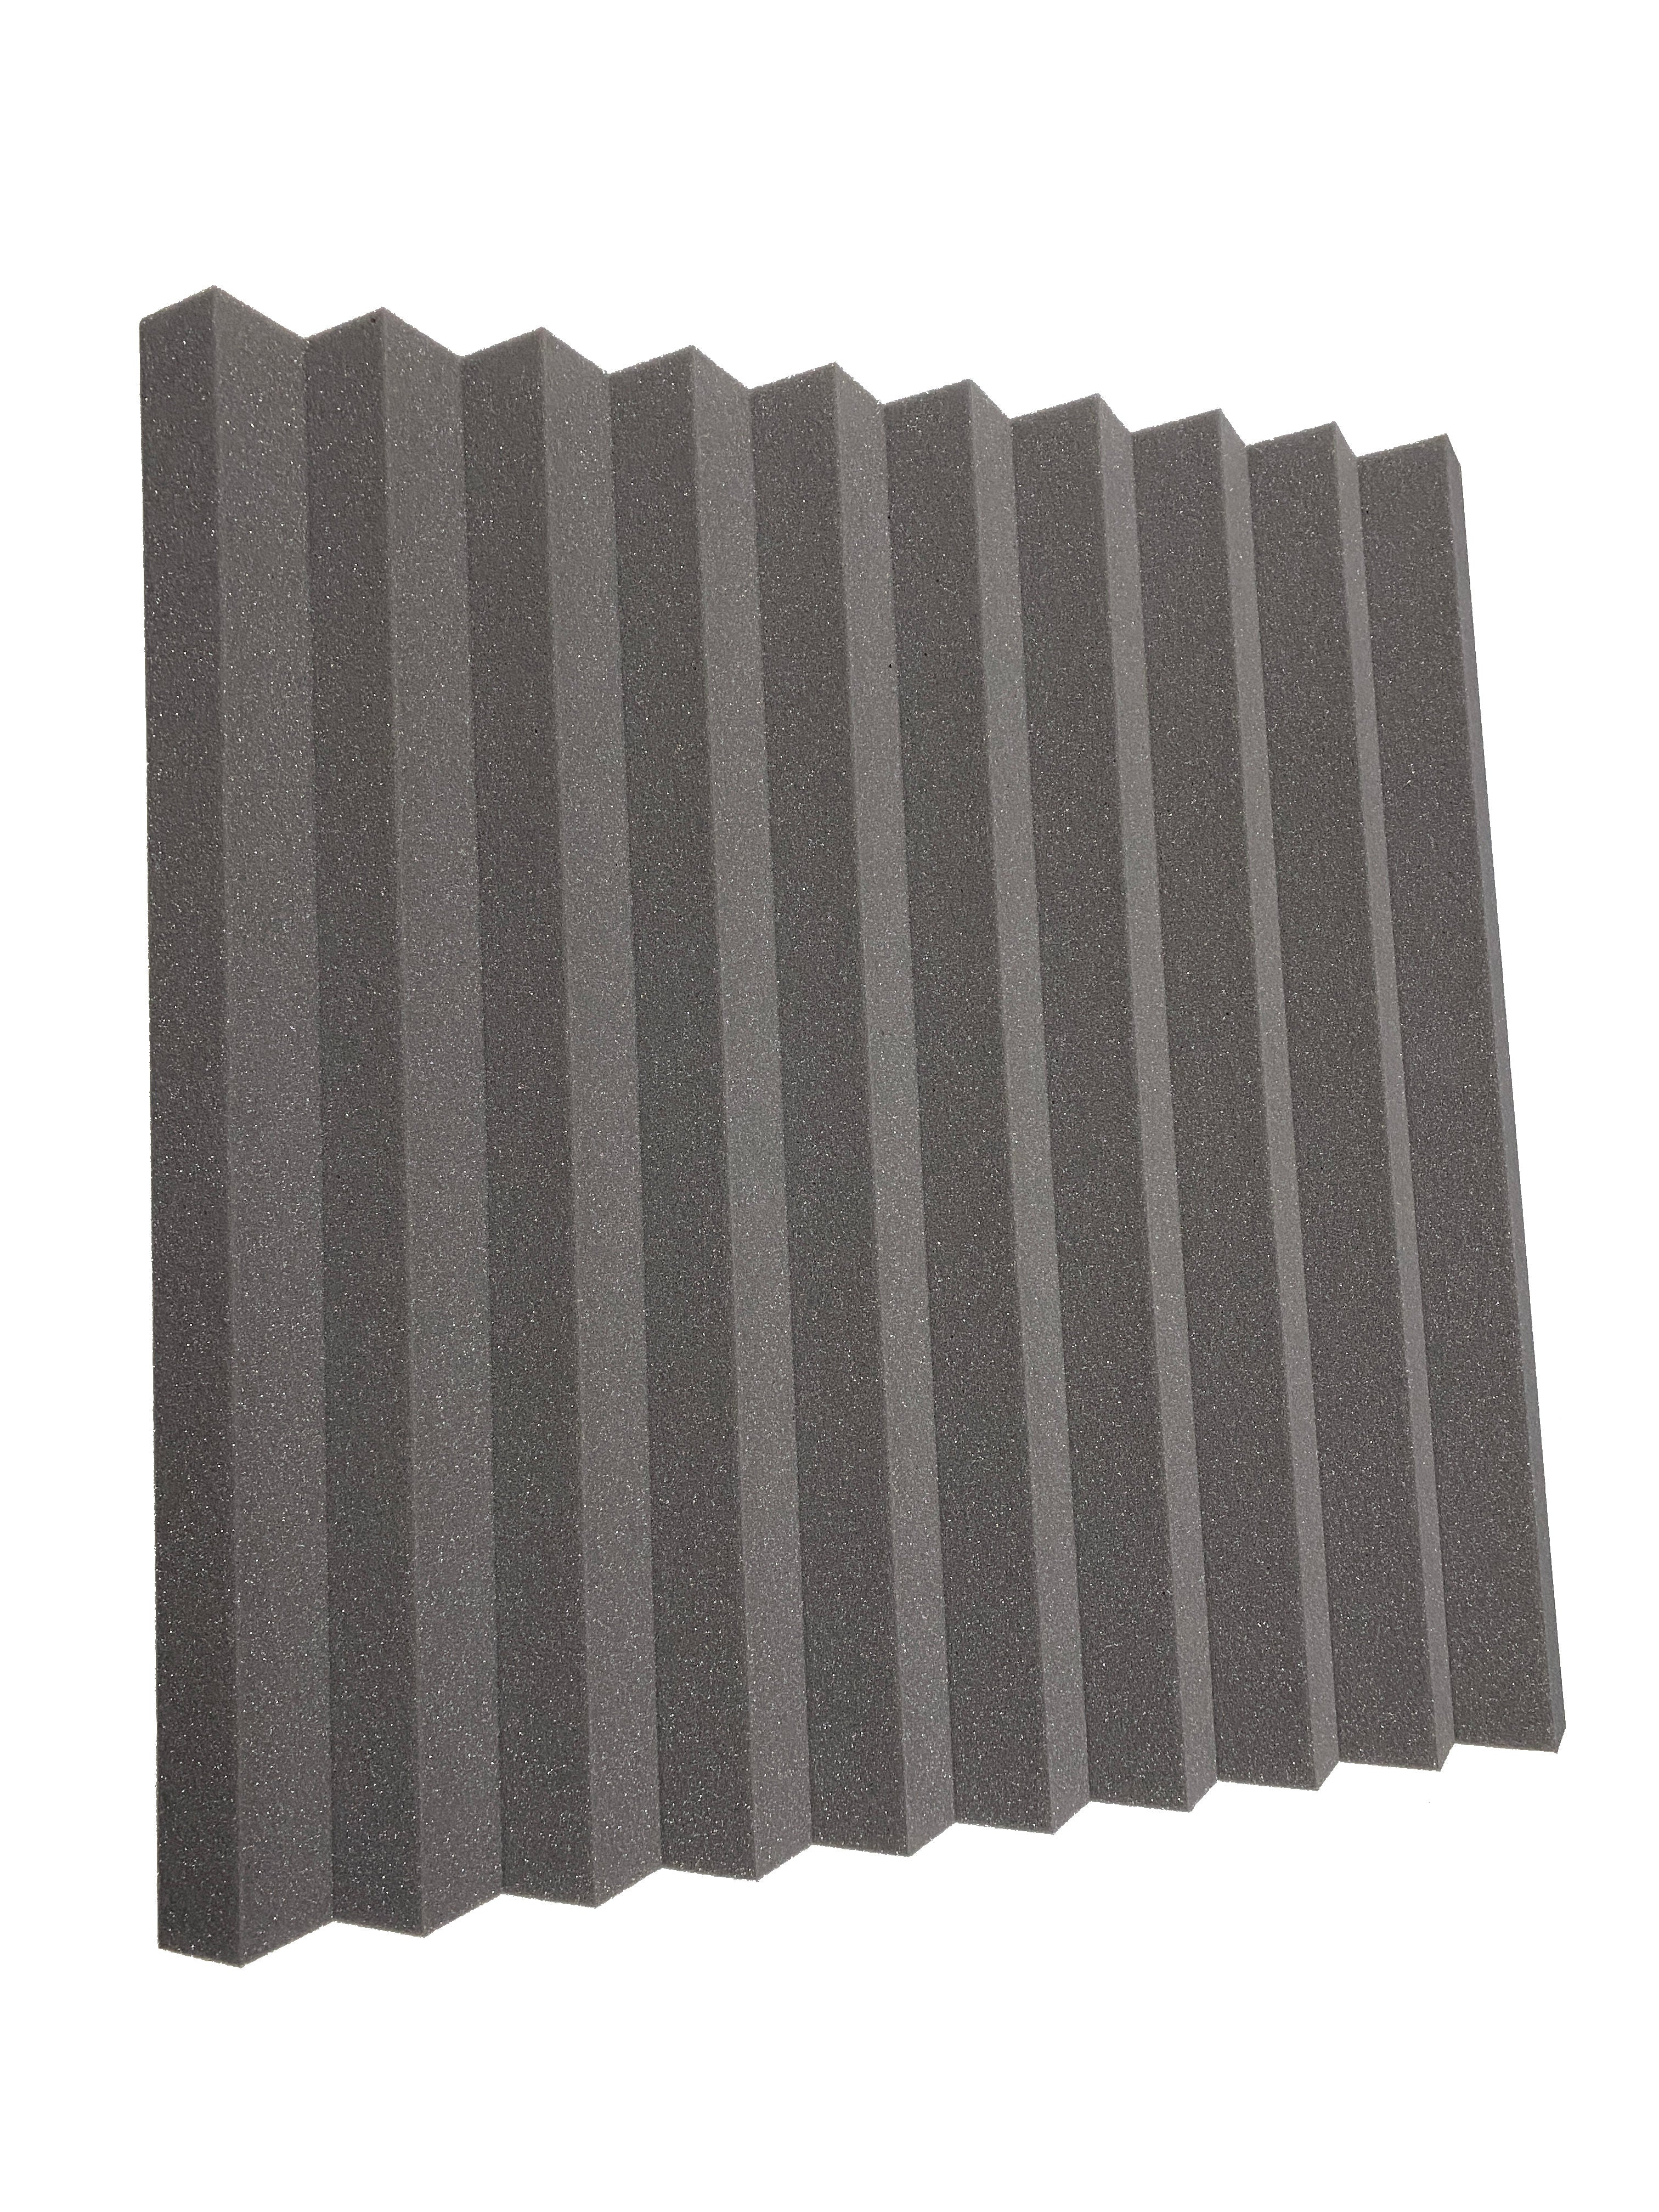 Kaufen mittelgrau Wedge PRO 76,2 cm Acoustic Studio Foam Tile Pack – 6 Fliesen, 3,48 m² Abdeckung